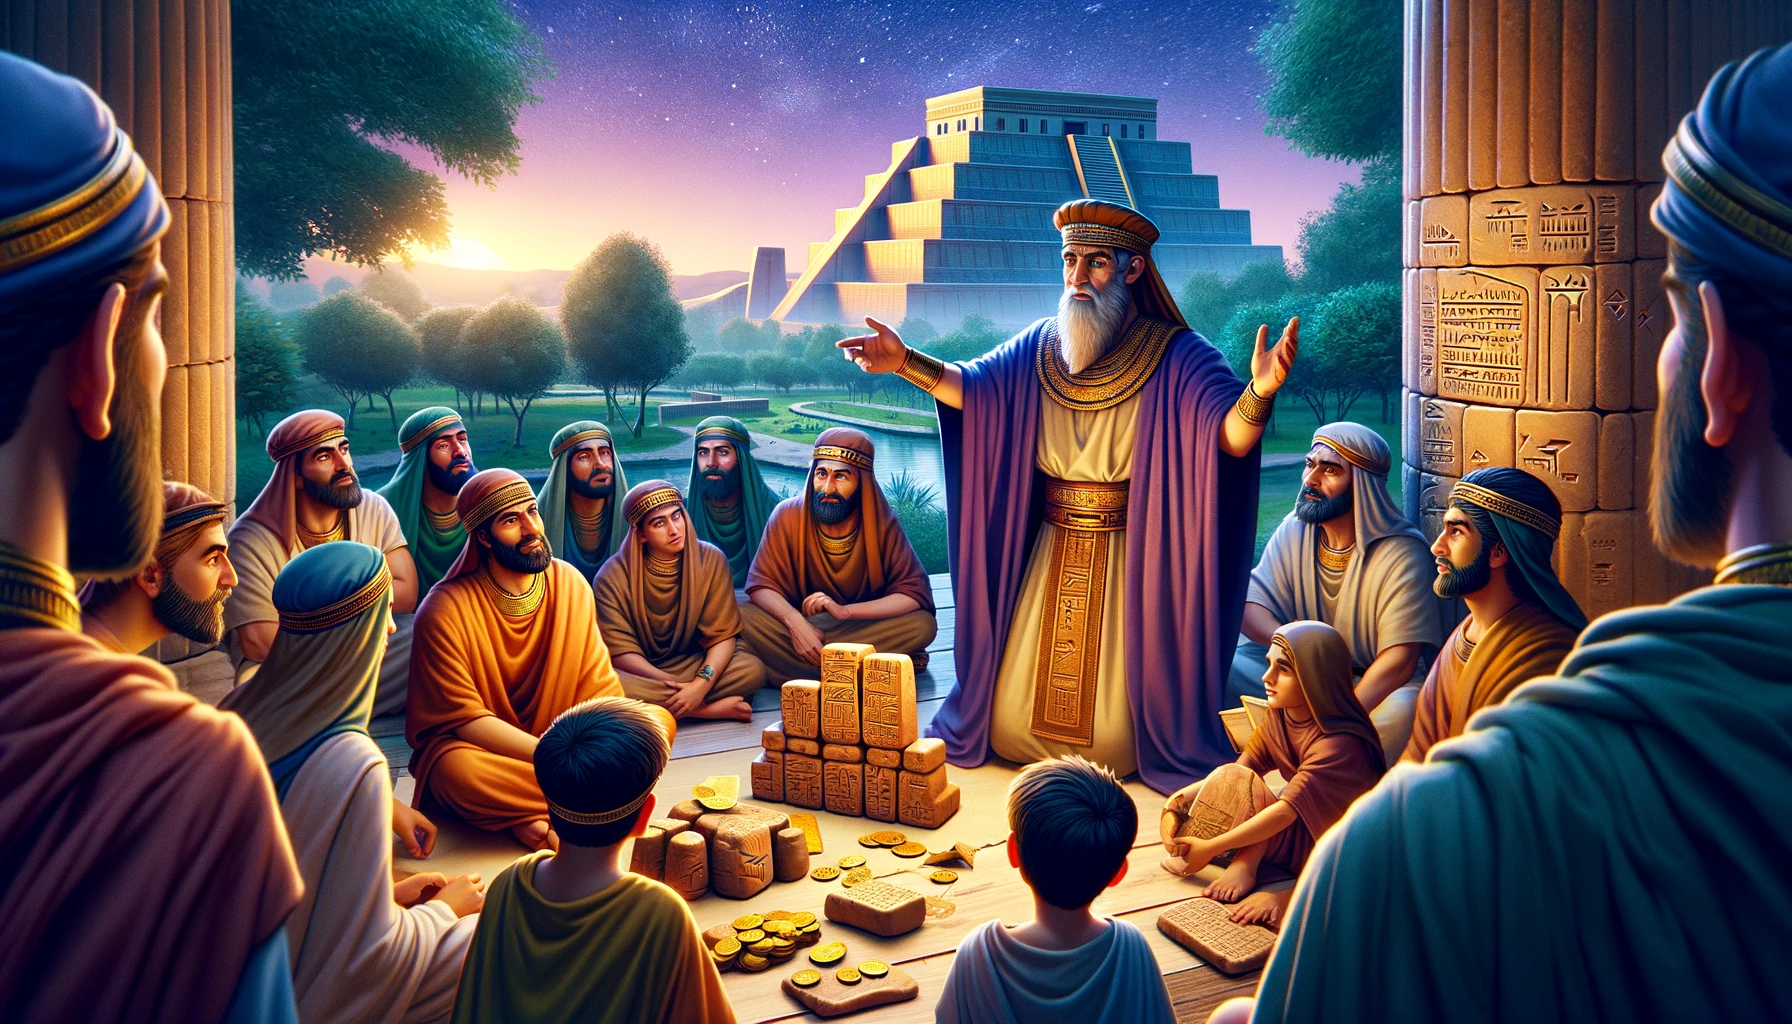 Arkad ensinando jovens e adultos em um jardim babilônico com a Torre de Babel ao fundo.